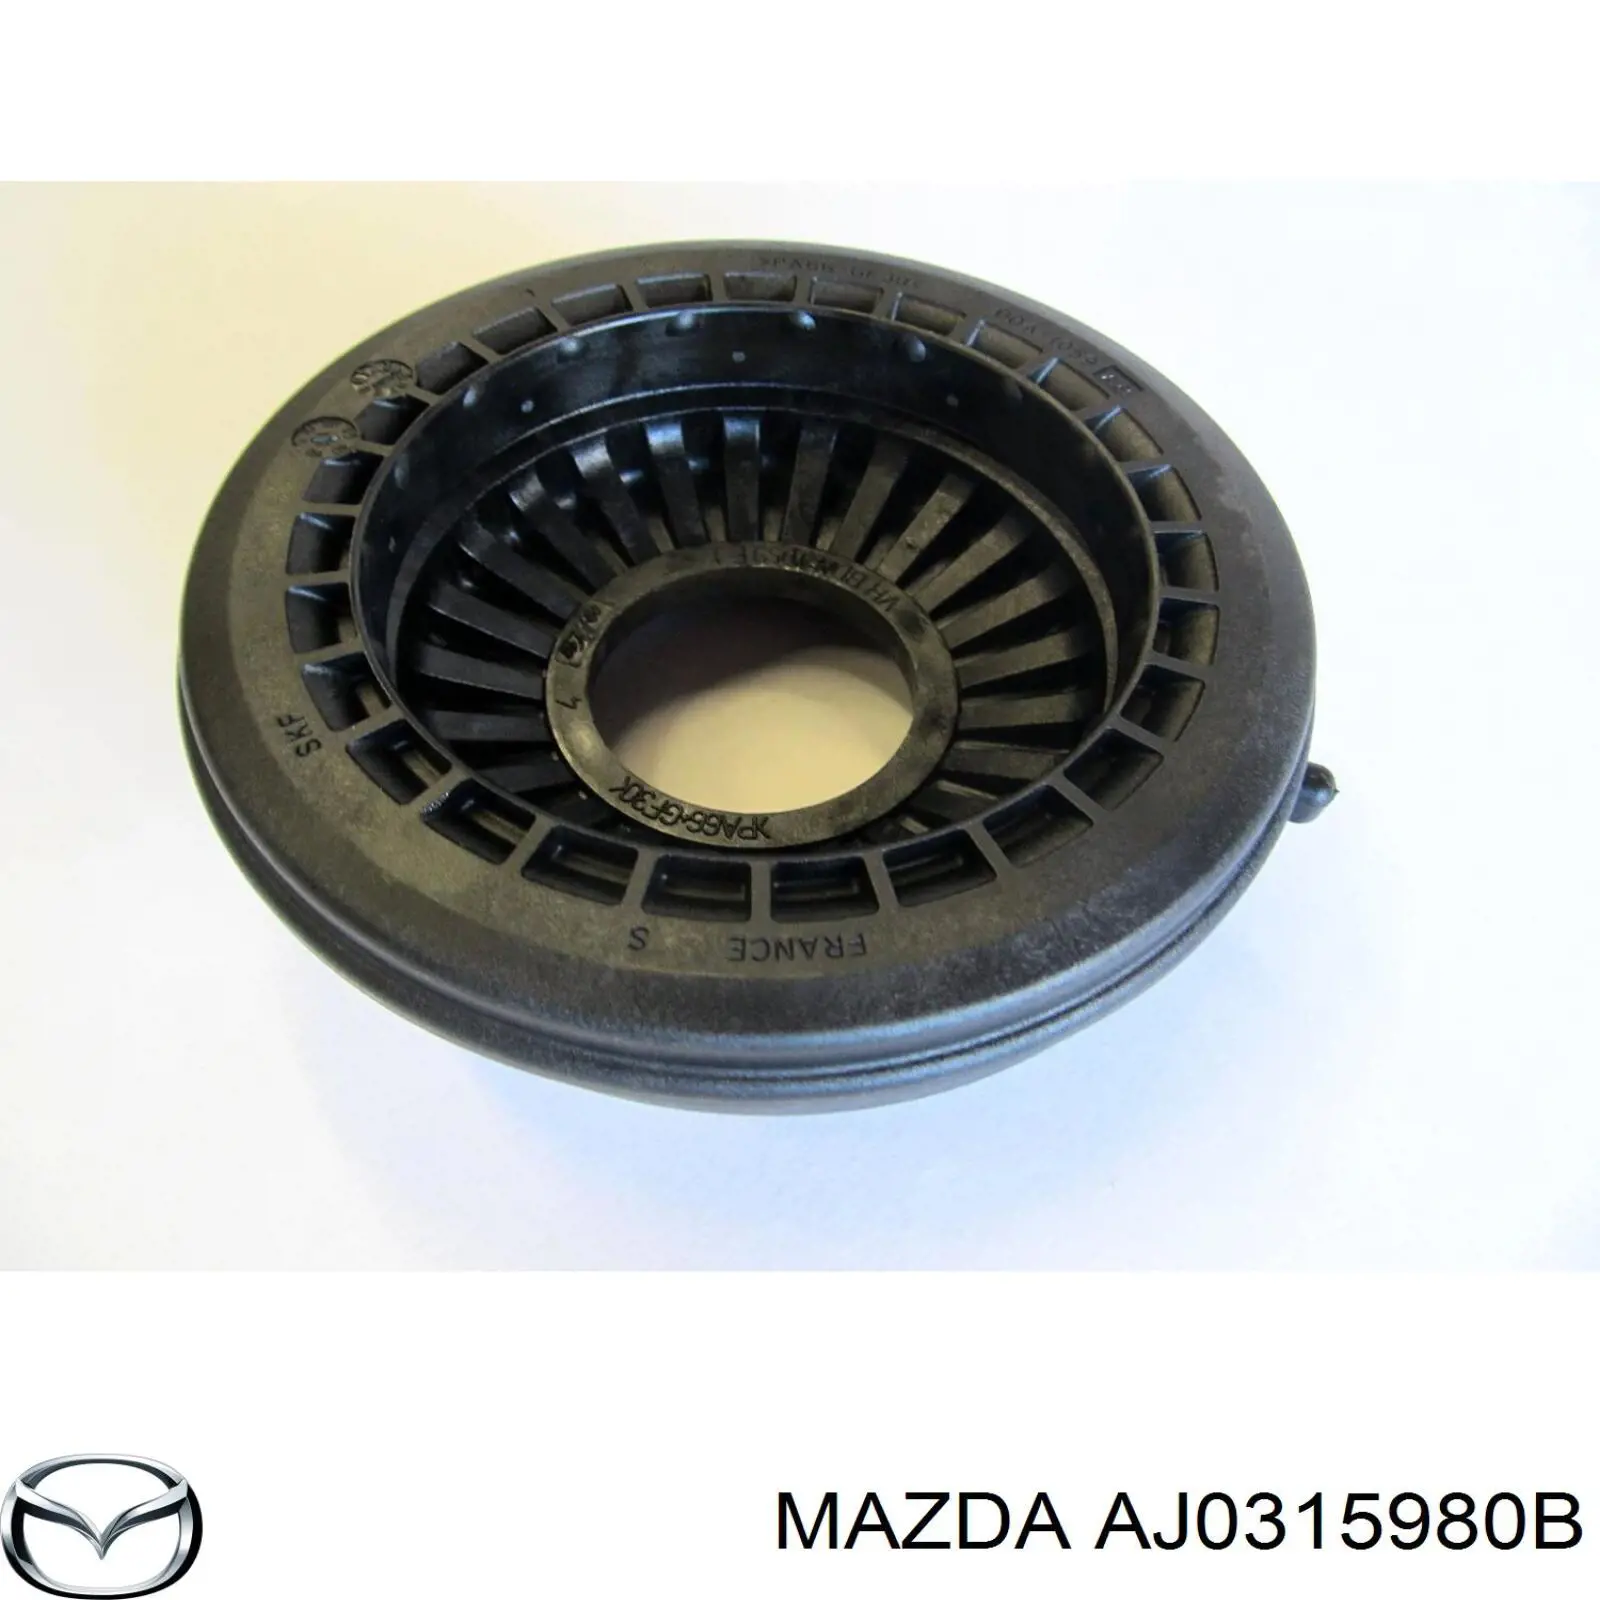 AJ0315980B Mazda tensor de correa, correa poli v